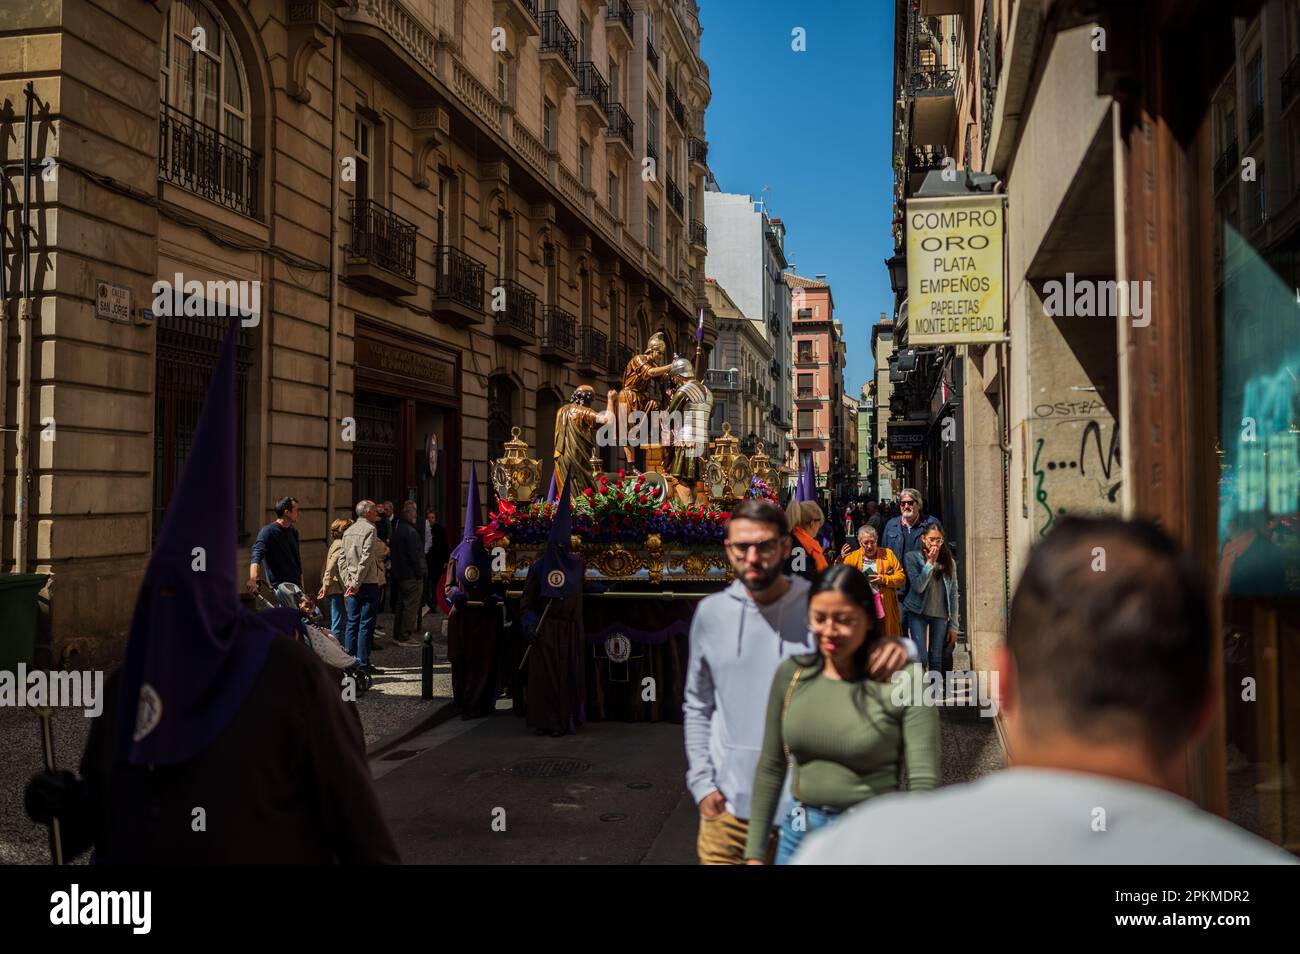 Holy Thursday 'Semana Santa' Parade in the streets of Zaragoza, Spain Stock Photo